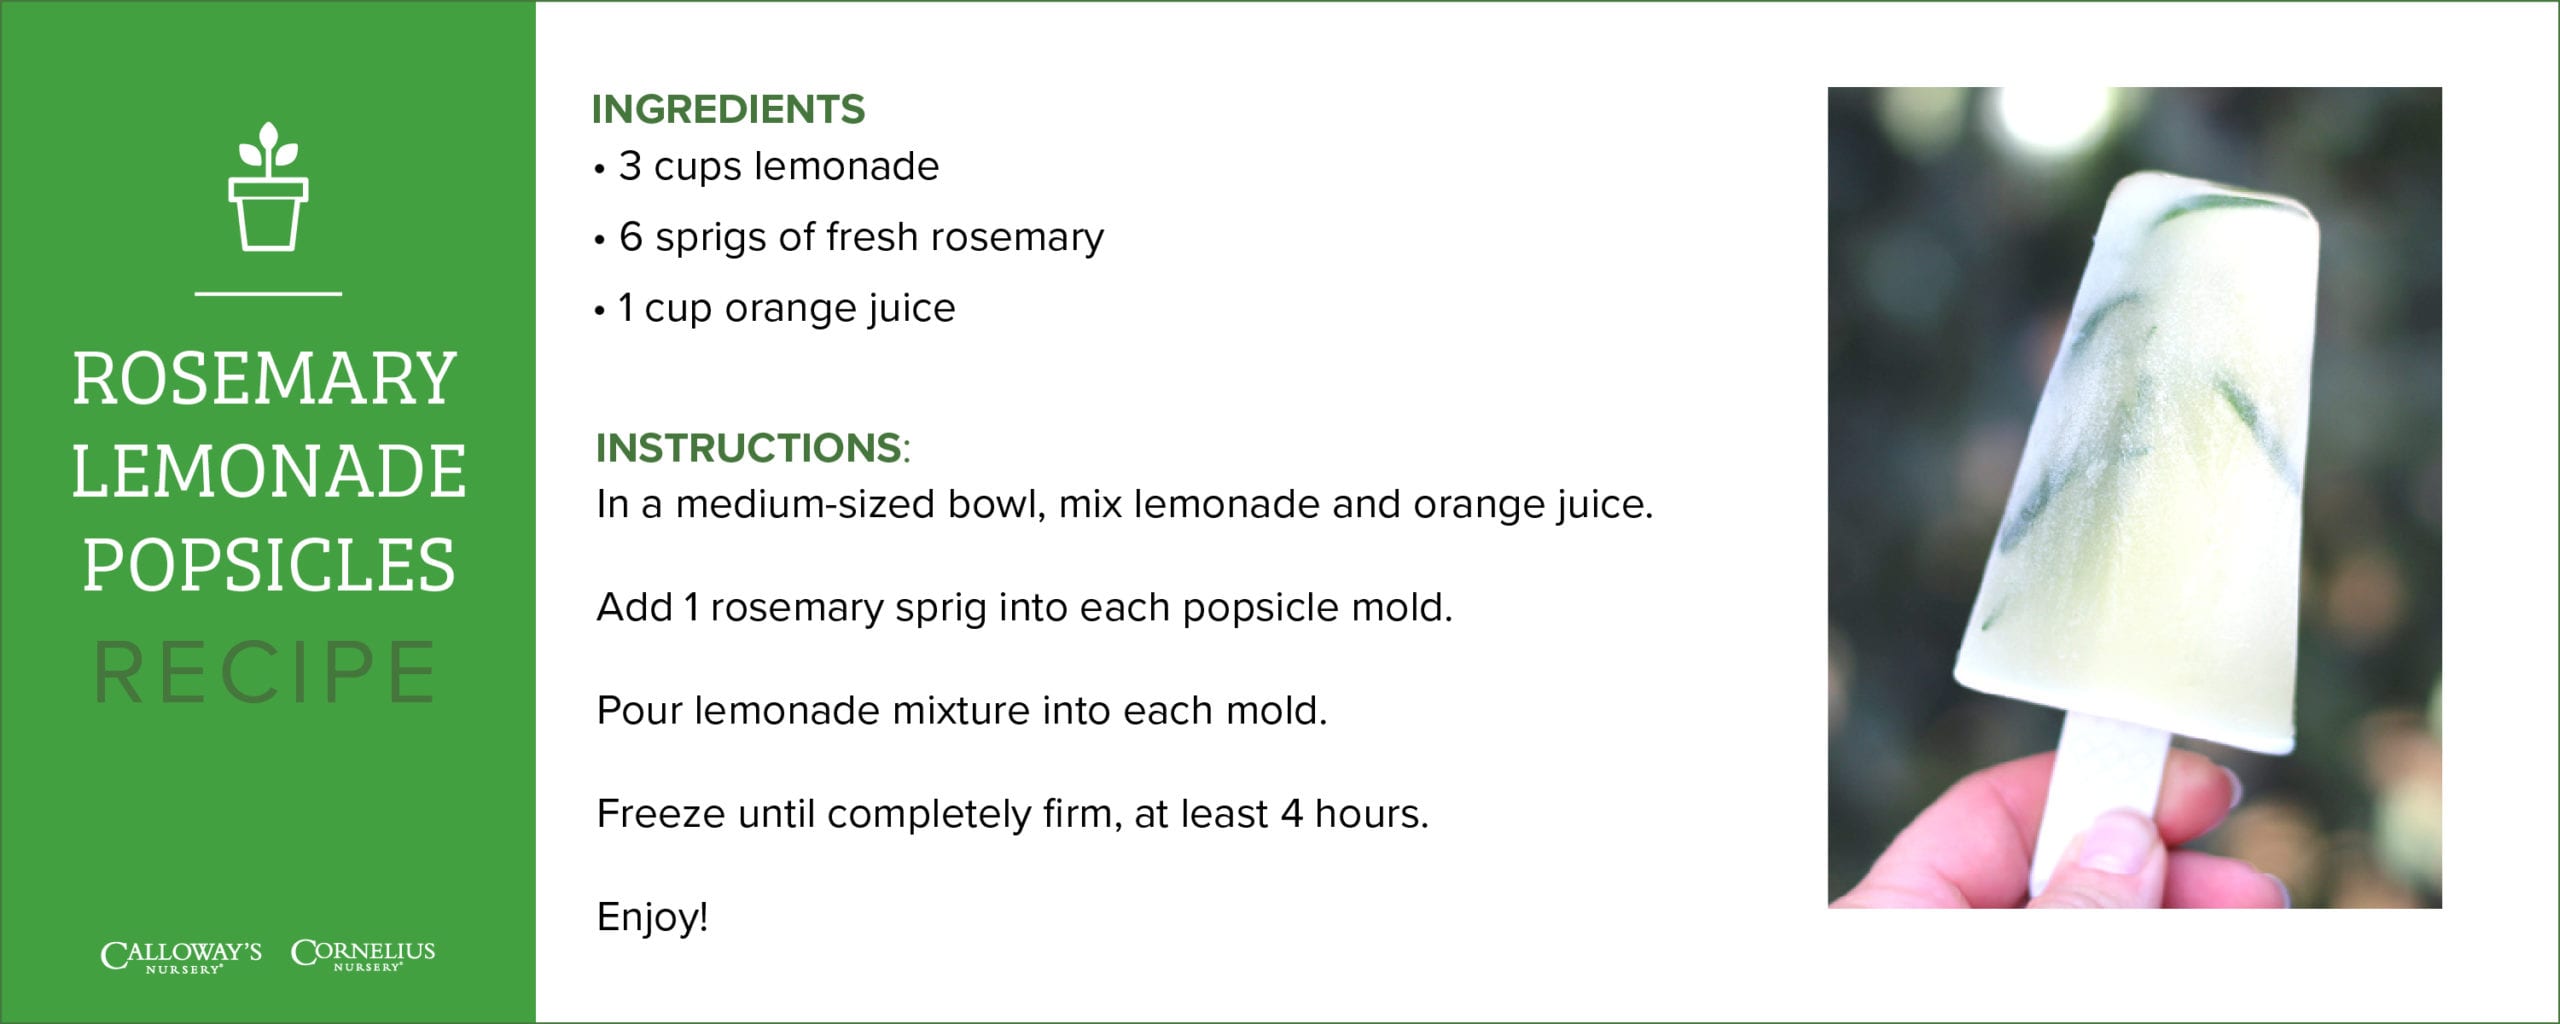 rosemary lemonade popsicle recipes